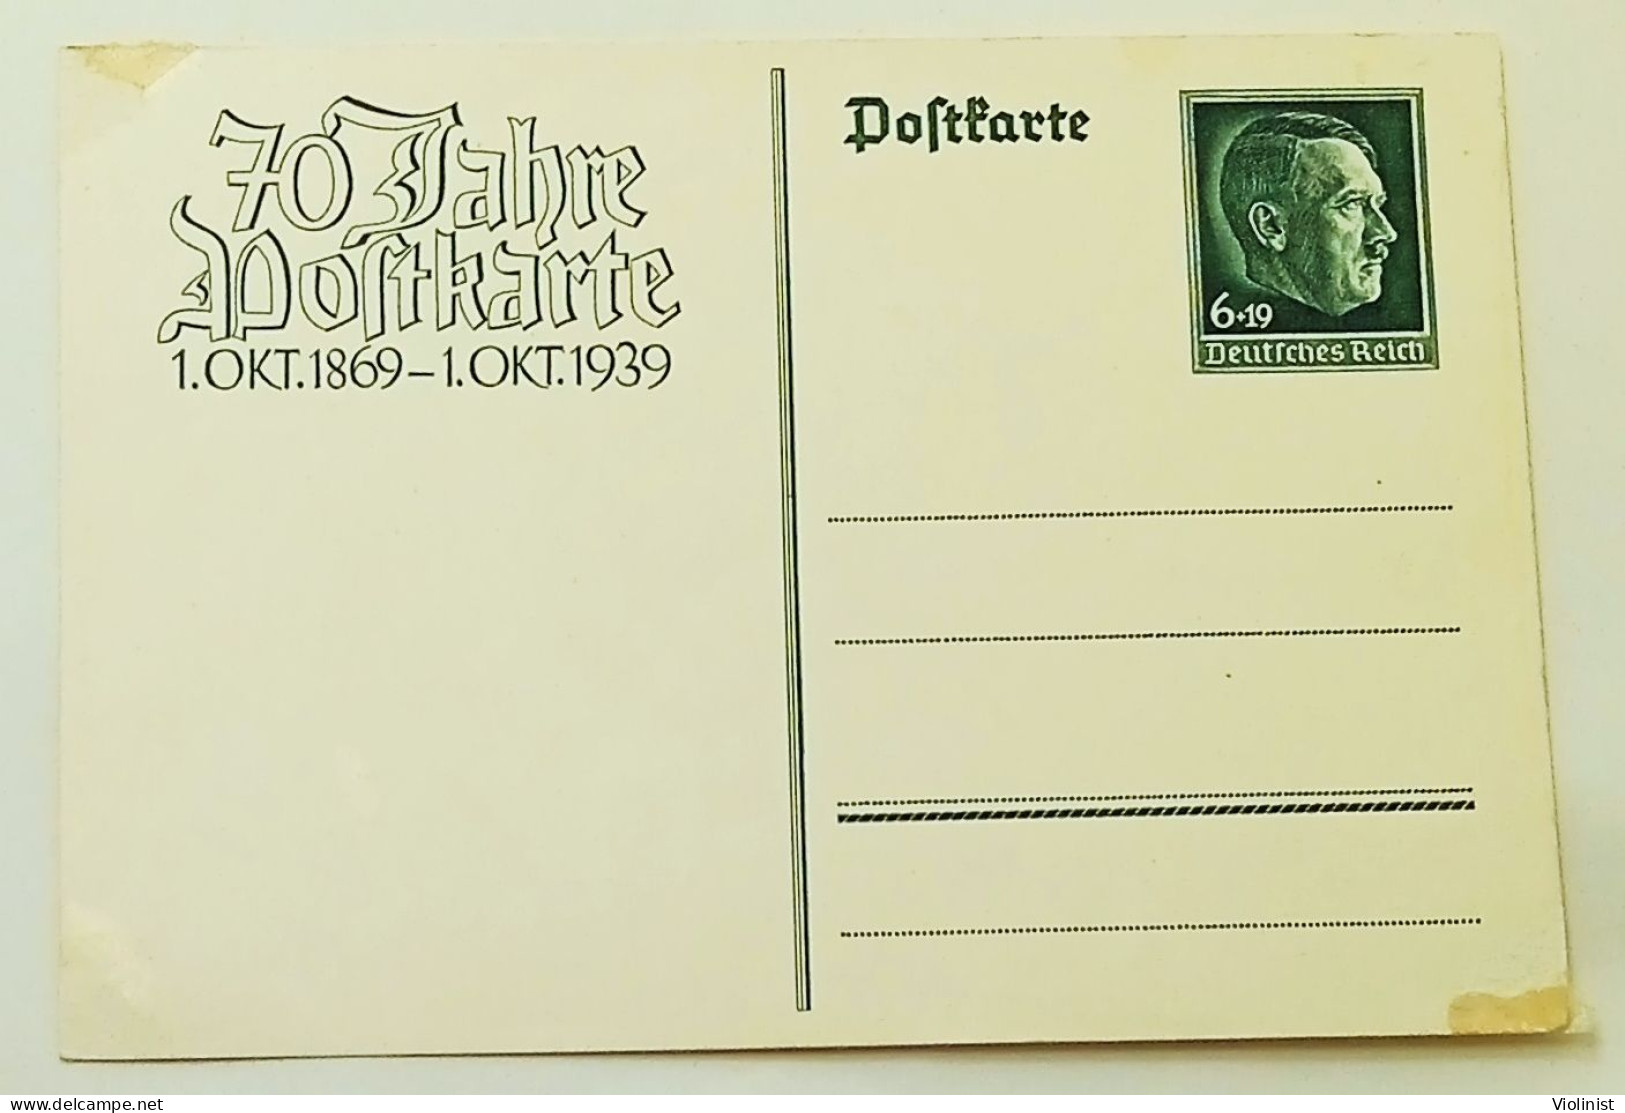 Deutsches Reich-70 Jahre Postkarte 1.OKT.1869.-1-OKT.1939. - Dienstmarken